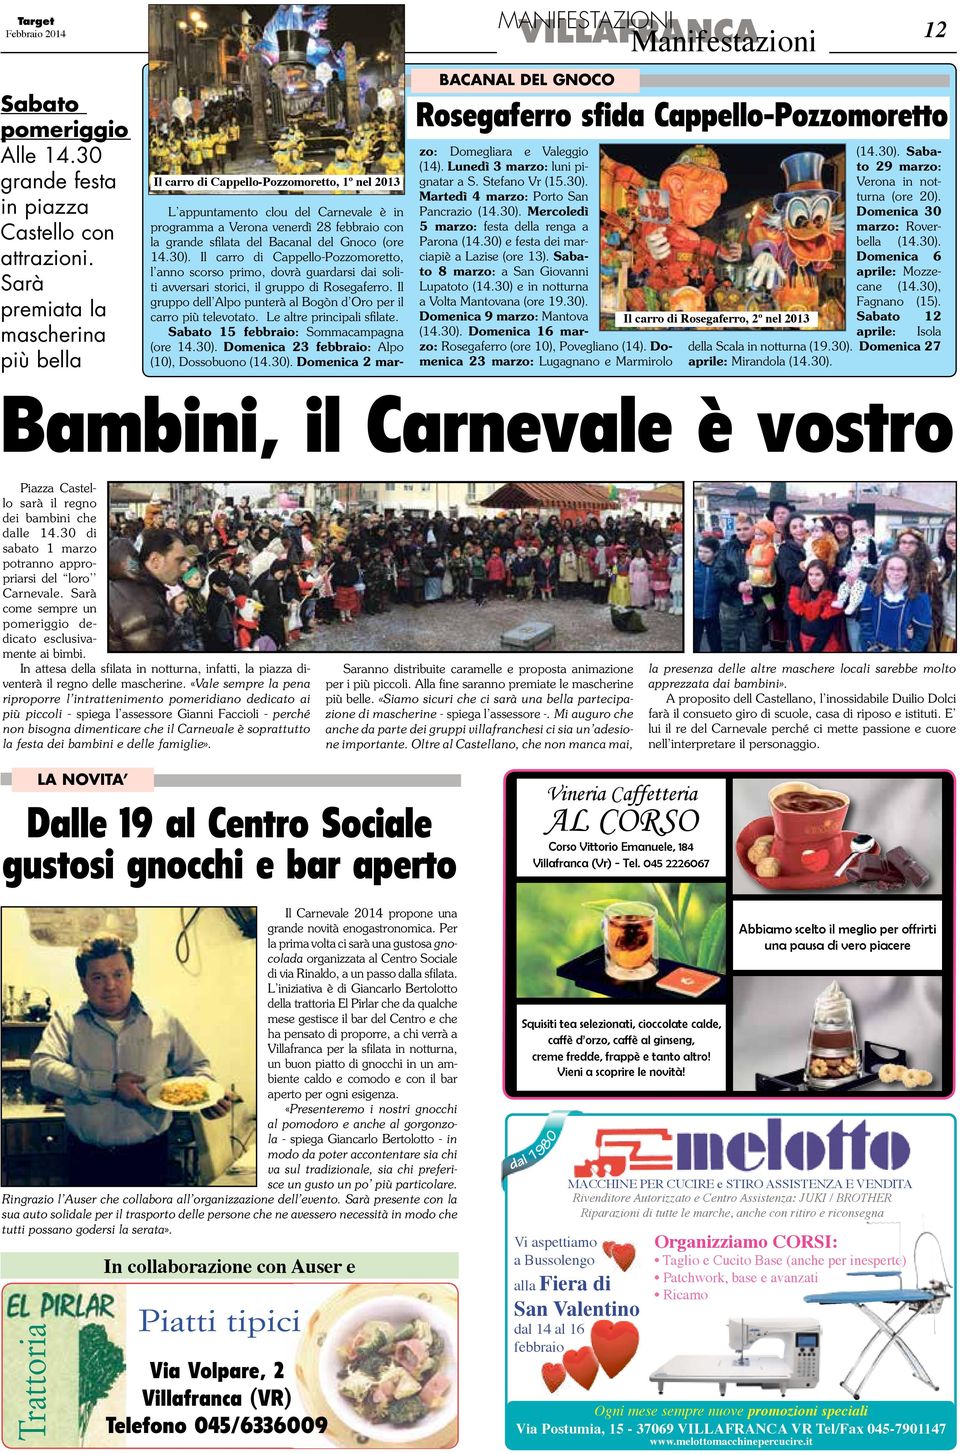 Cappello-Pozzomoretto L appuntamento clou del Carnevale è in programma a Verona venerdì 28 febbraio con la grande sfilata del Bacanal del Gnoco (ore 14.30).